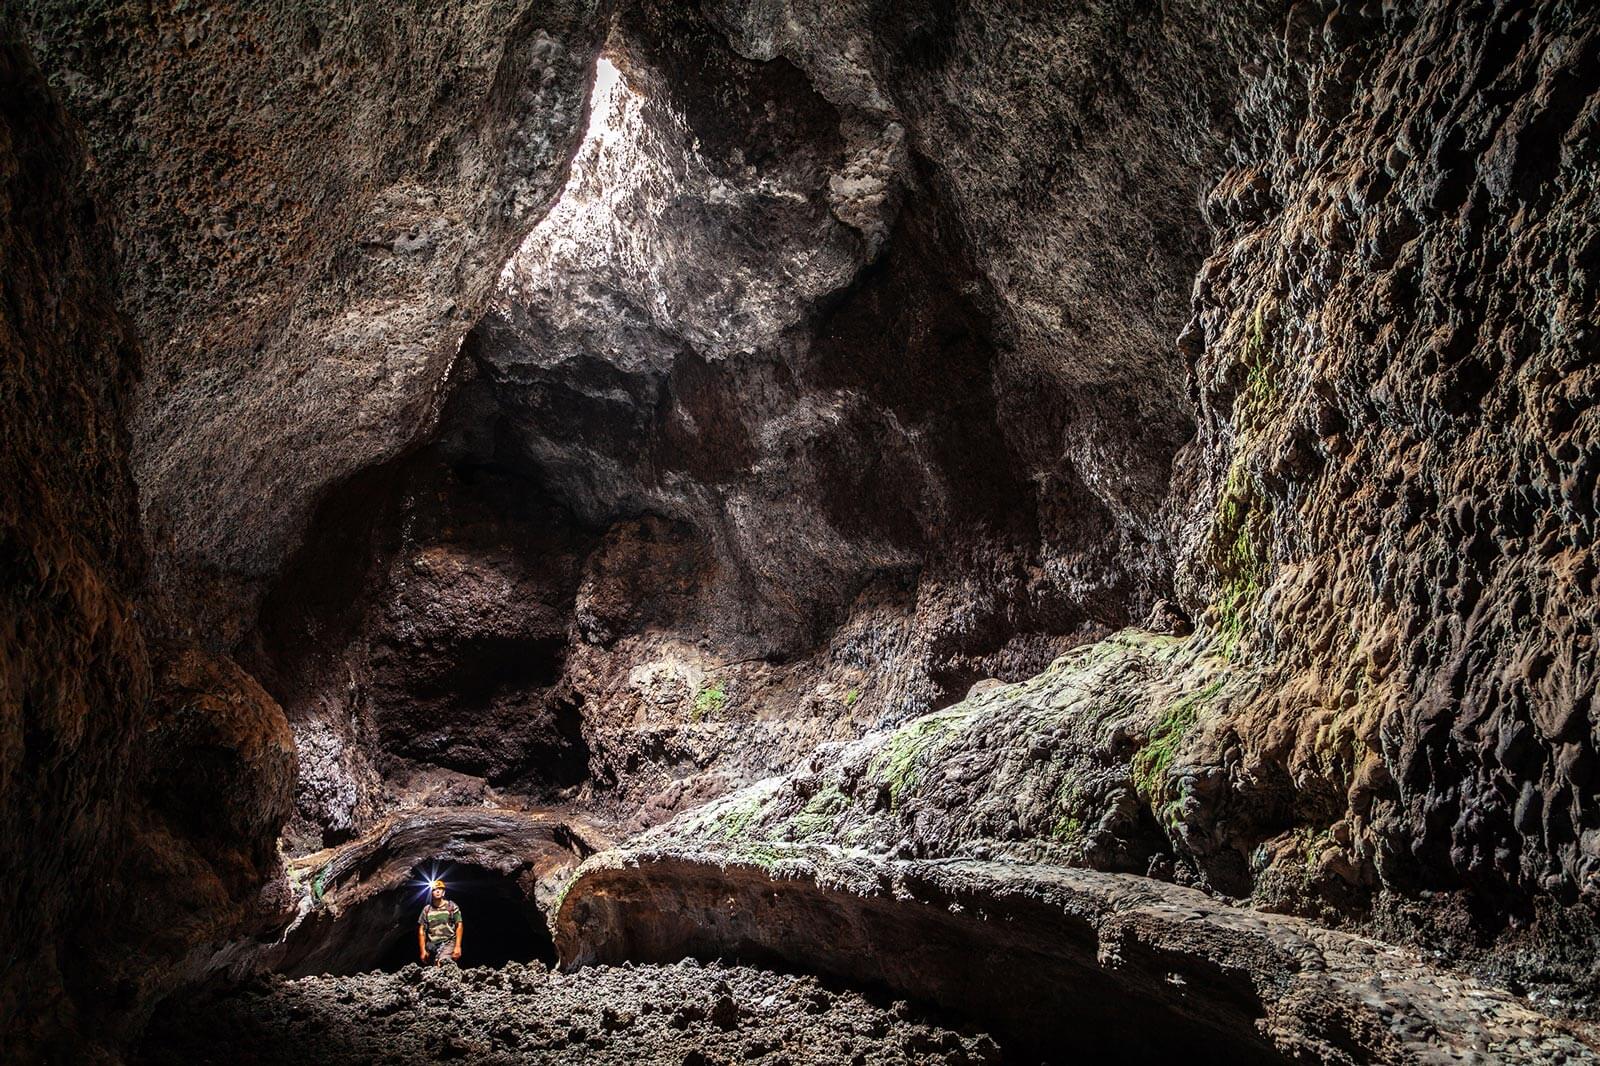 Centro de Interpretación de Cavidades Volcánicas Caños de Fuego Cueva Las Palomas - Centros de interpretación de La Palma